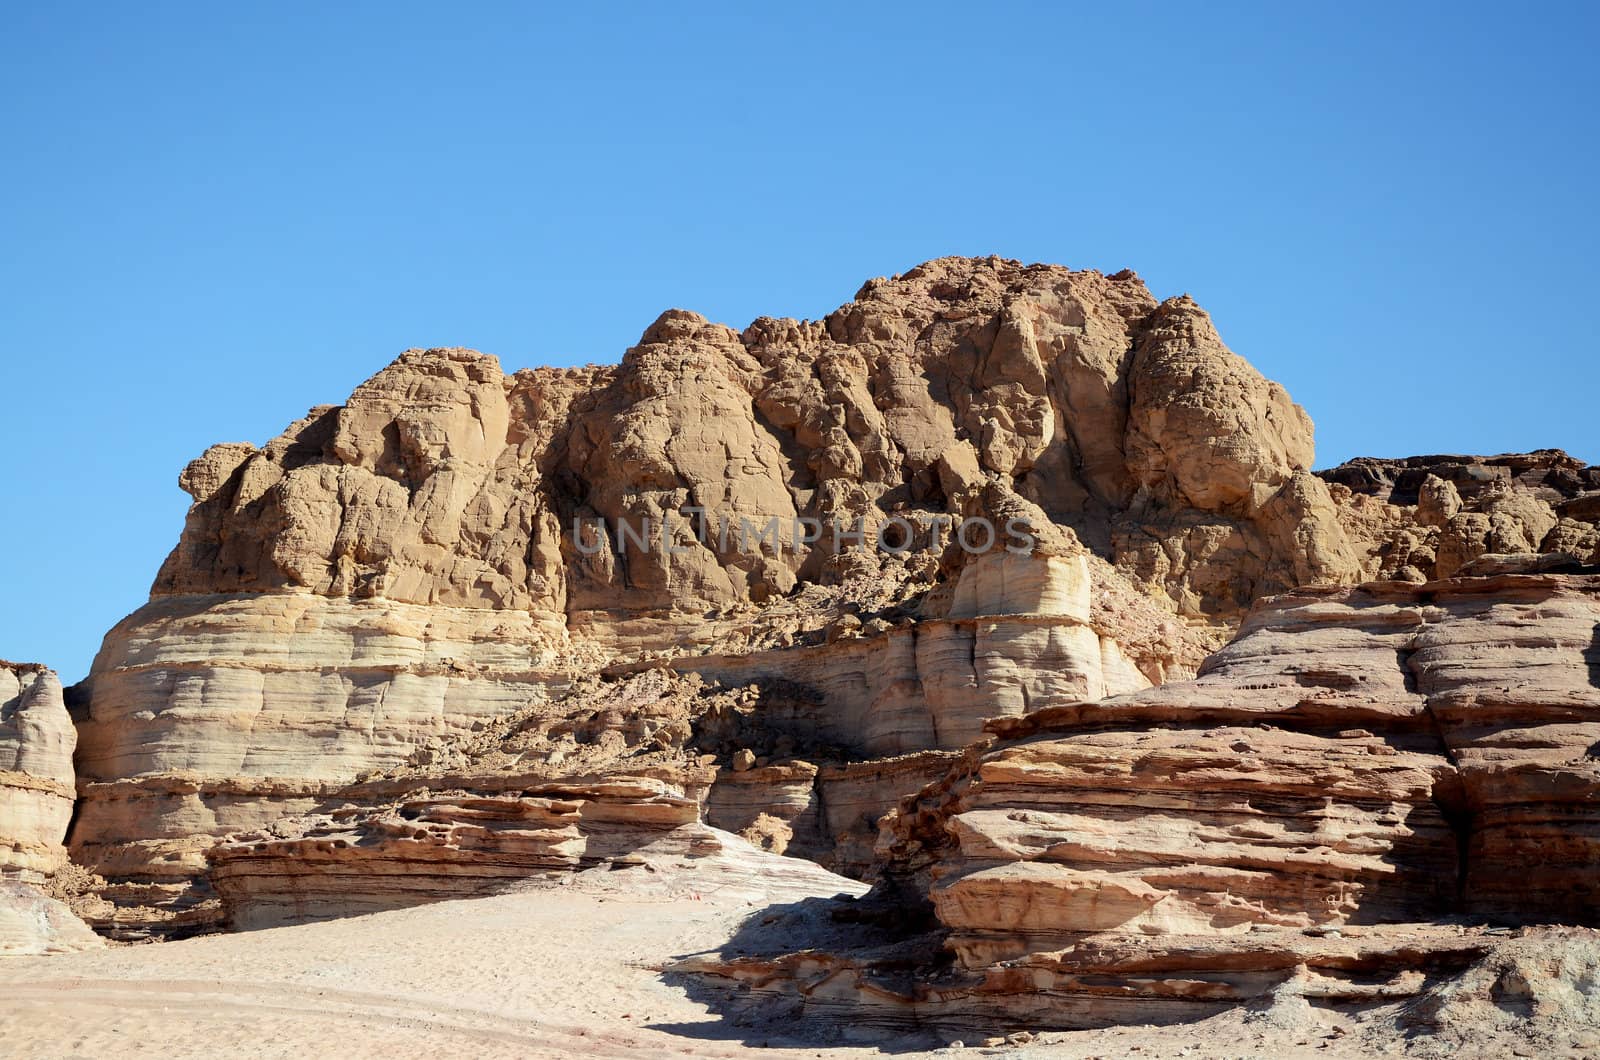 Rocky desert landscape under blue bright sky